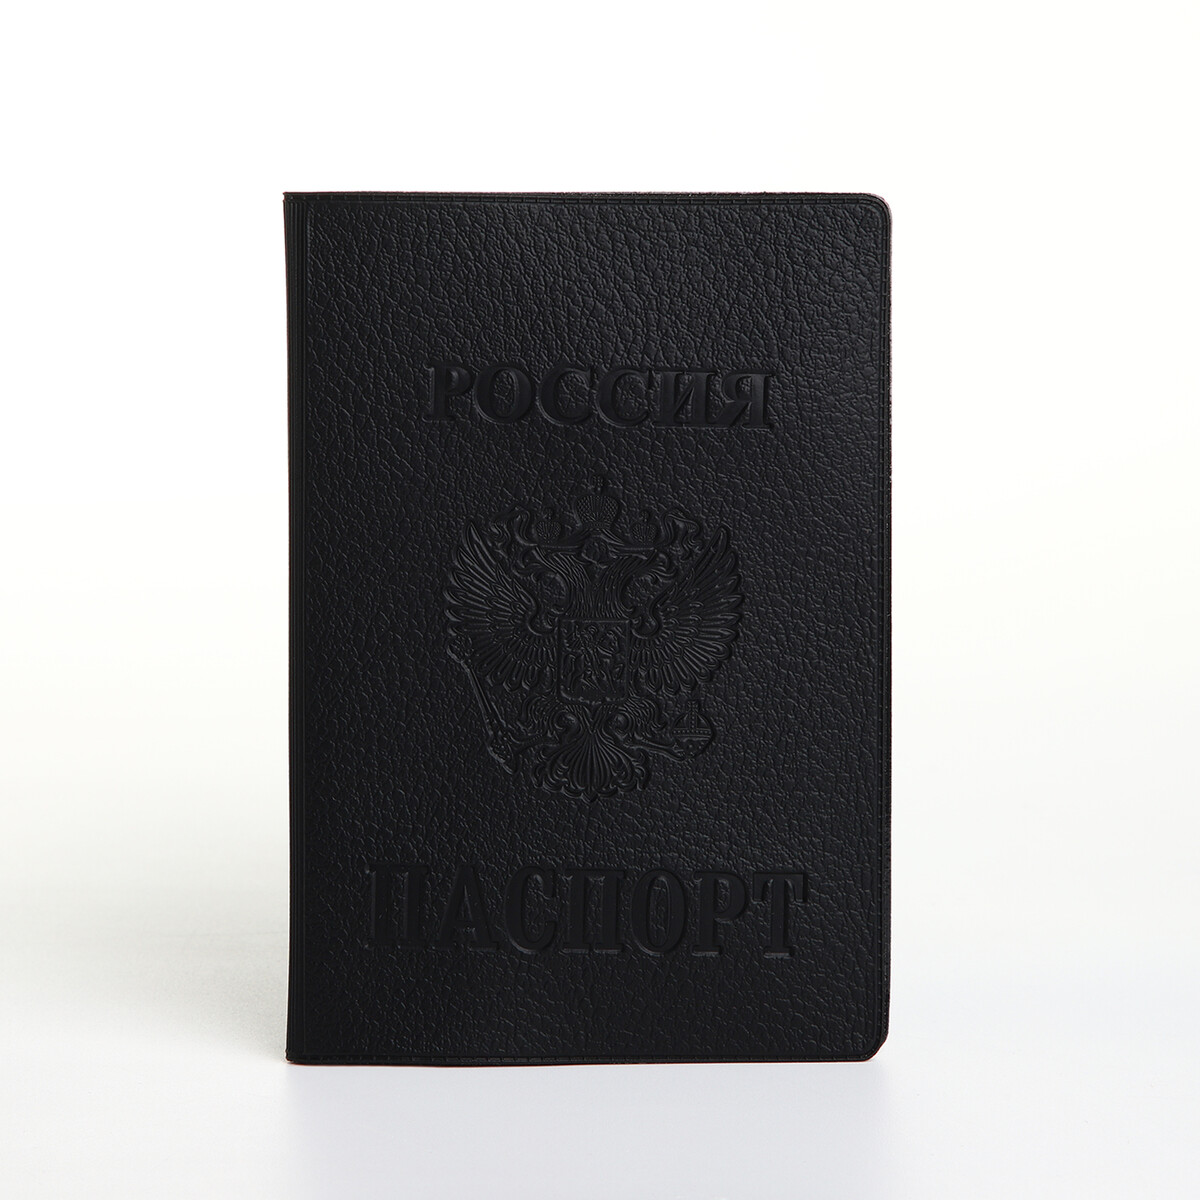 Обложка для паспорта, герб, 9,5*0,5*13,5 см, конгрев, винилл 1799 черный